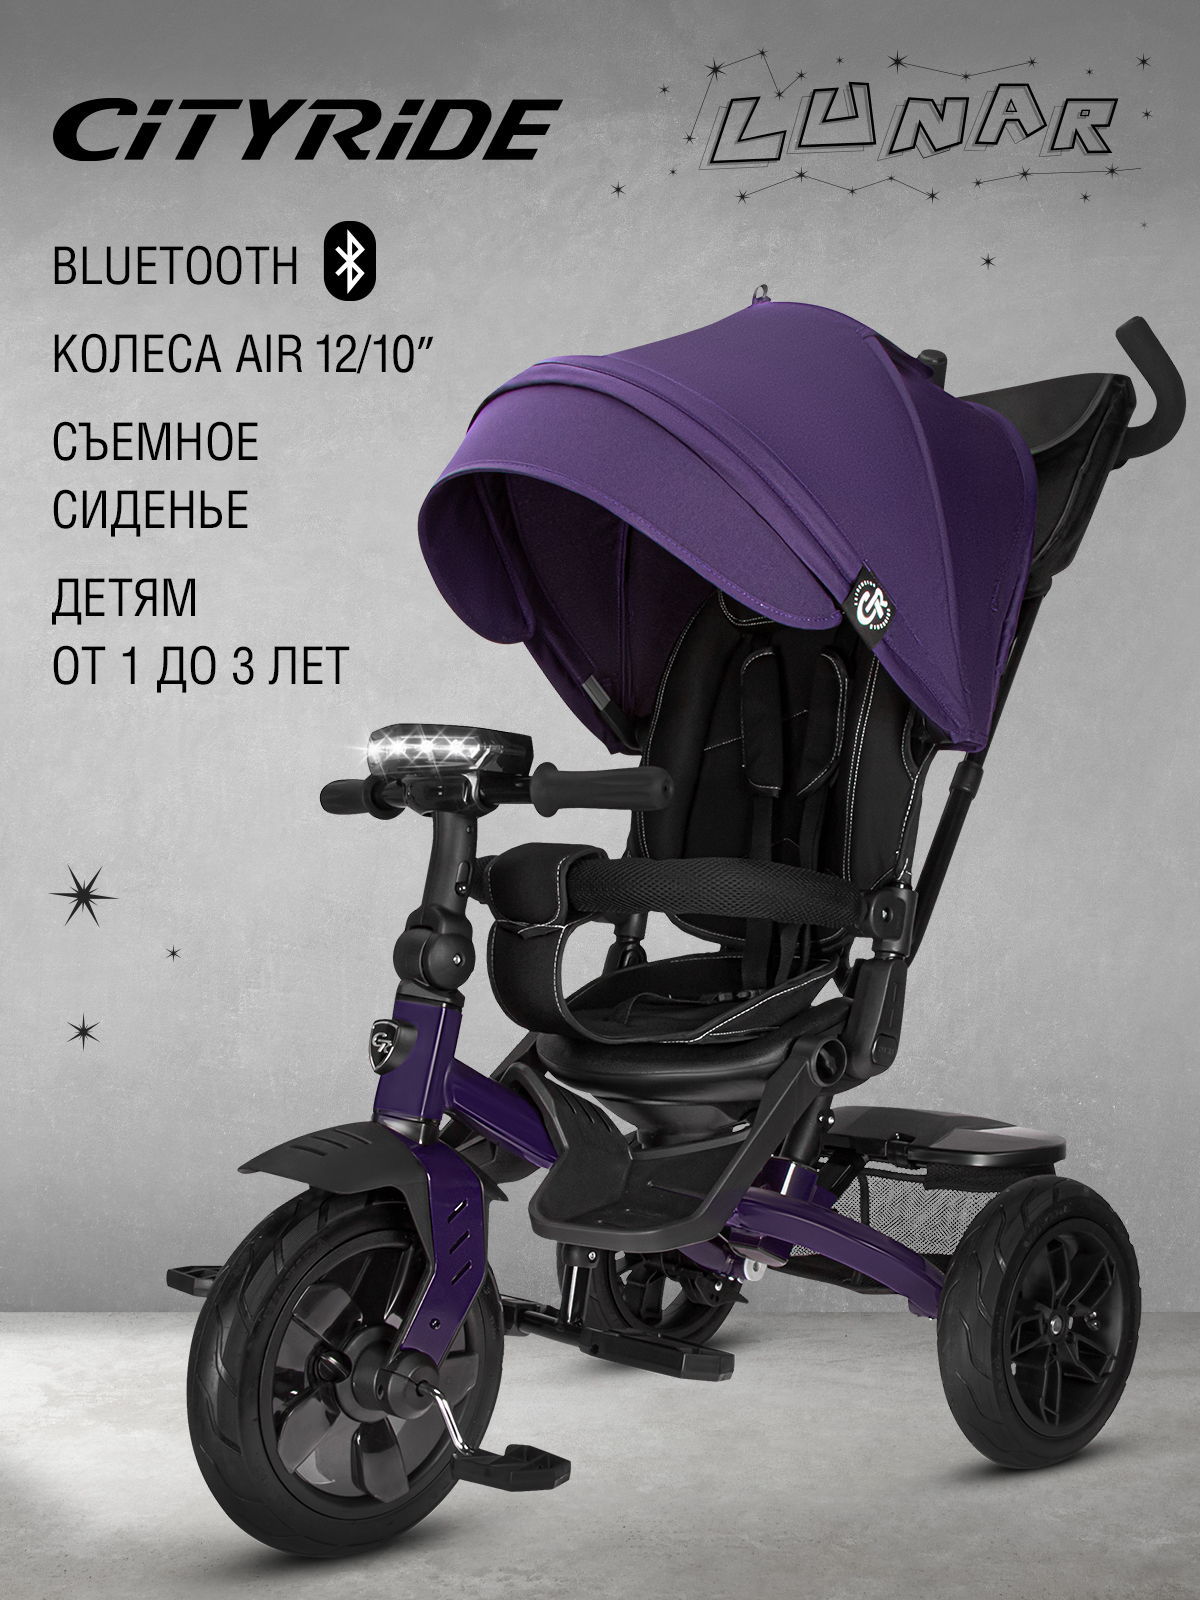 Велосипед детский City-Ride 3-колесный Lunar, съемное сиденье, колеса 12/10, CR-B3-10VT